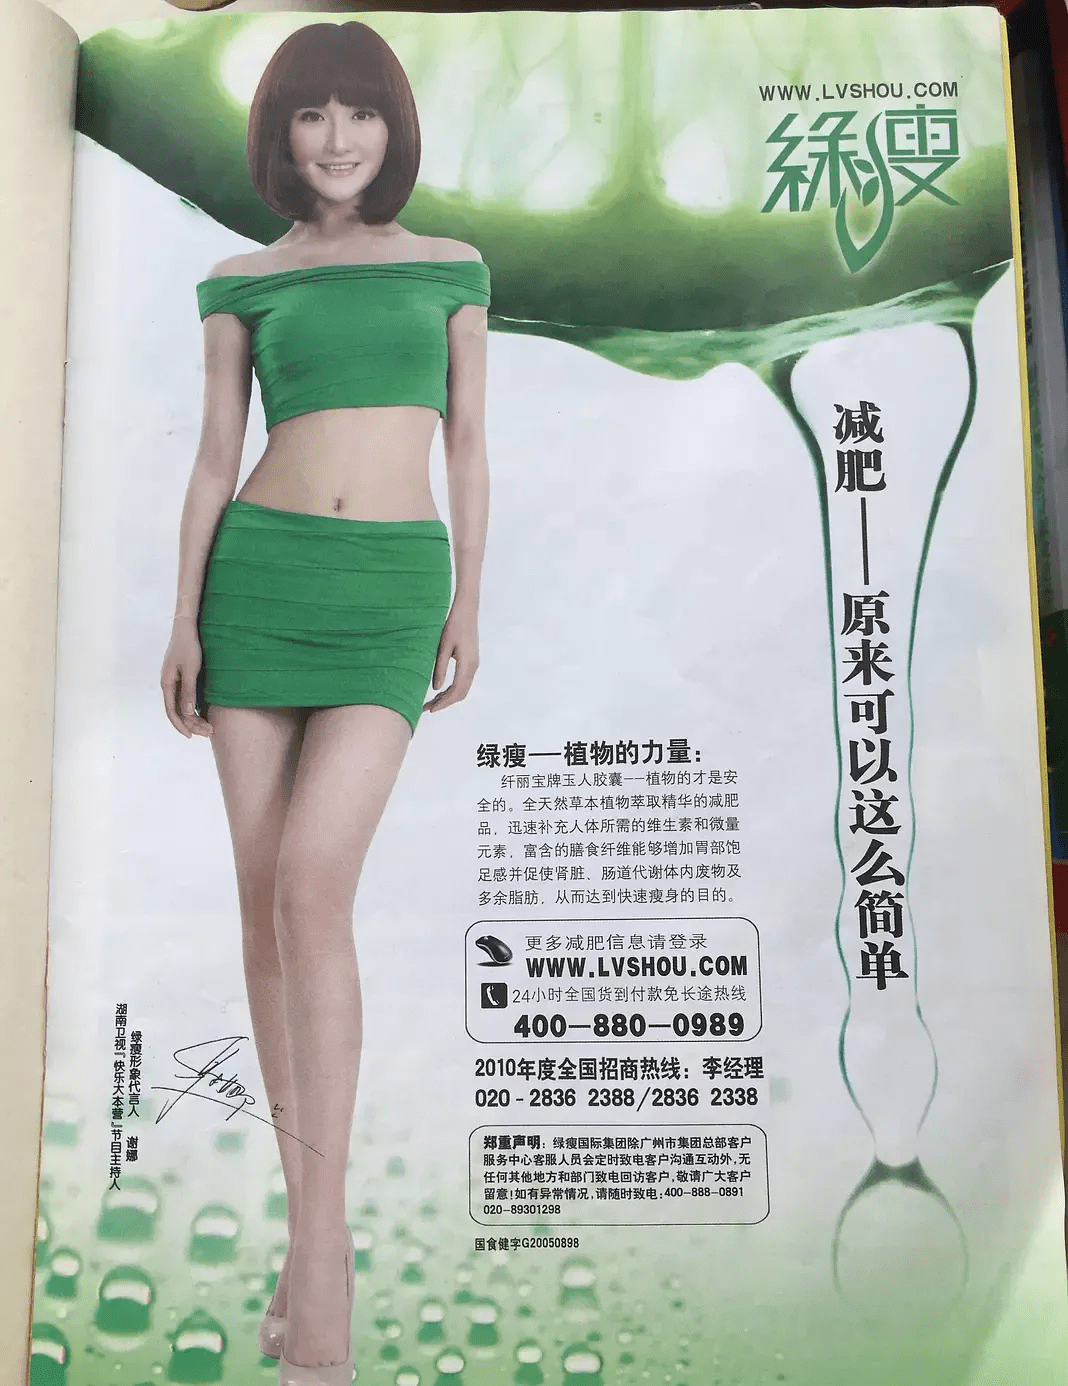 谢娜绿瘦广告图片